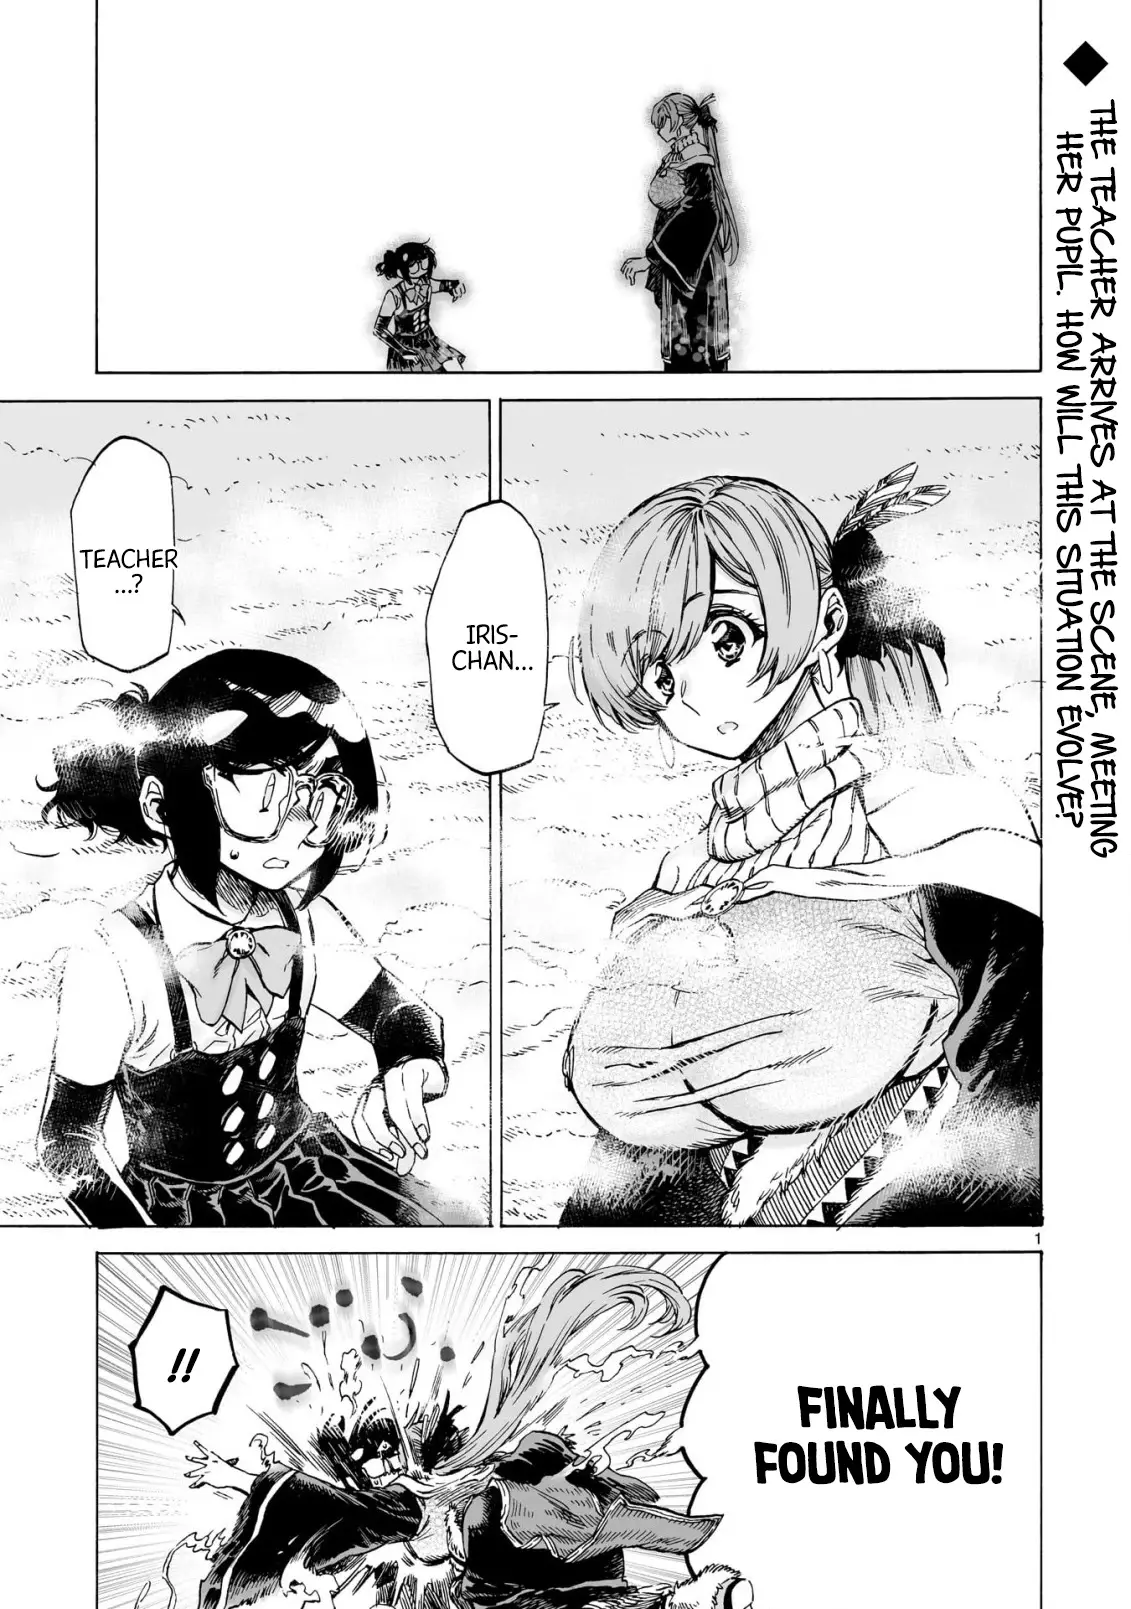 Nina-san no Mahou Seikatsu - 22 page 1-809c850c